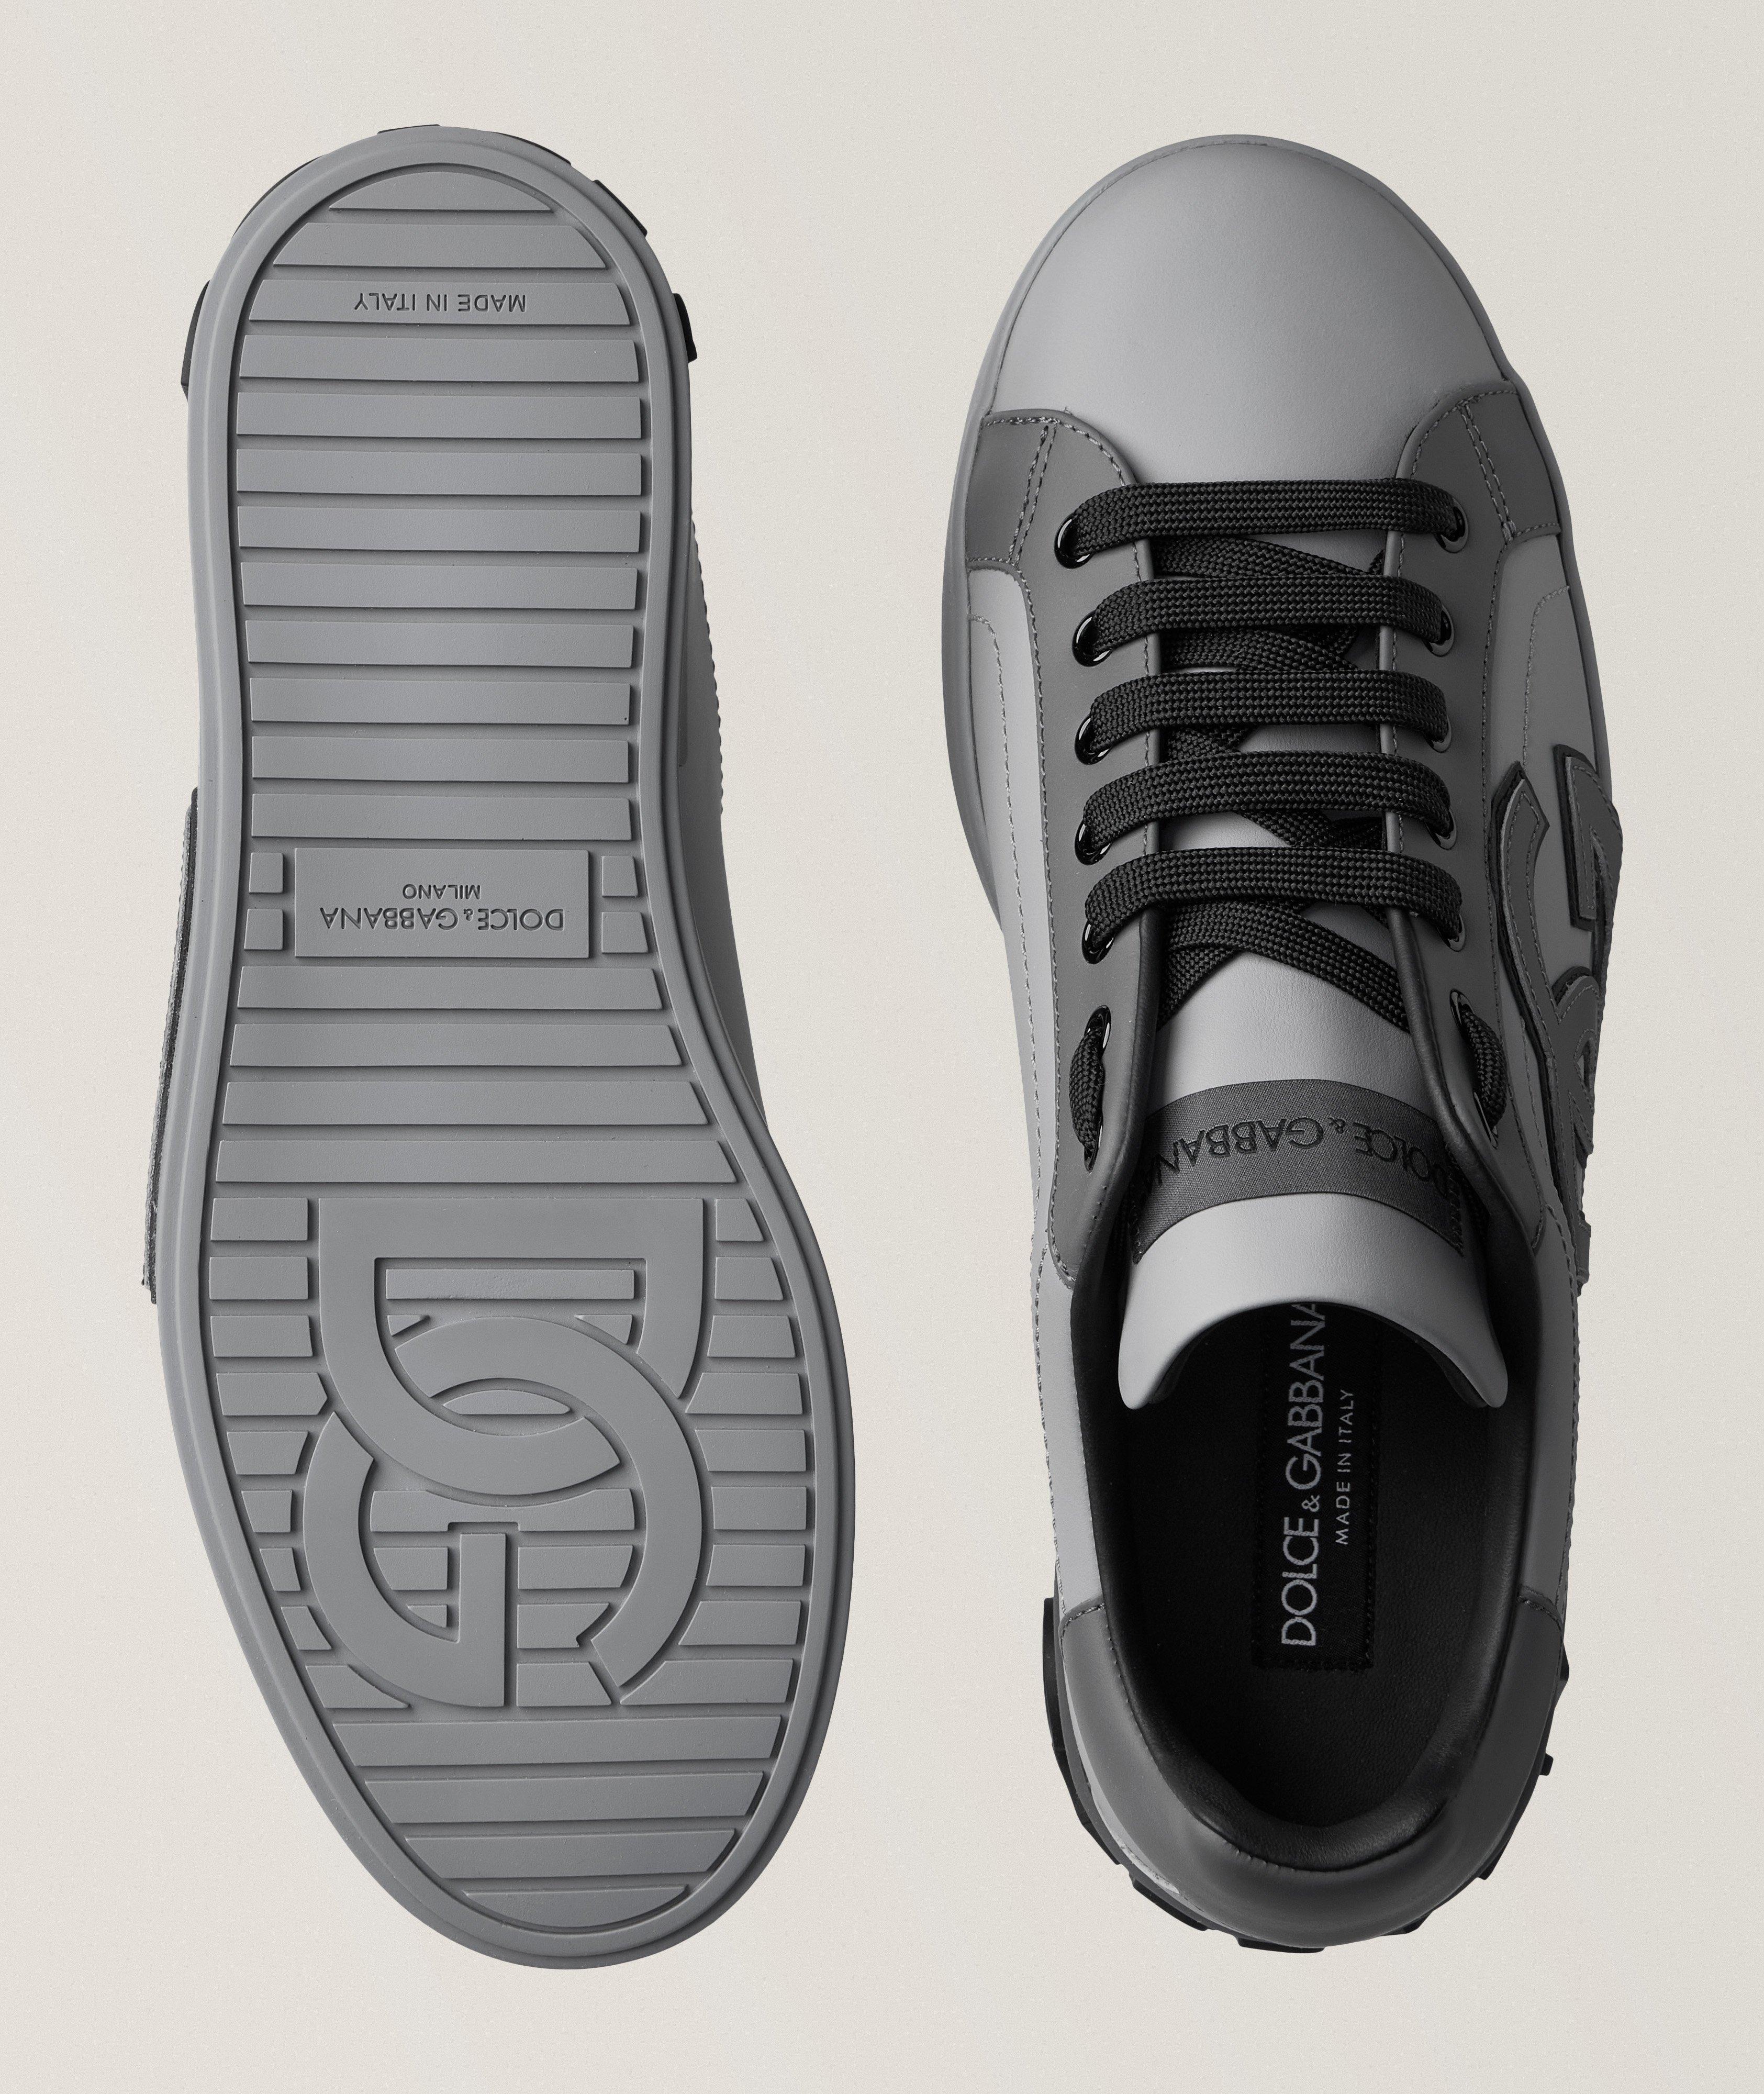 Portofino Nappa Leather Sneakers